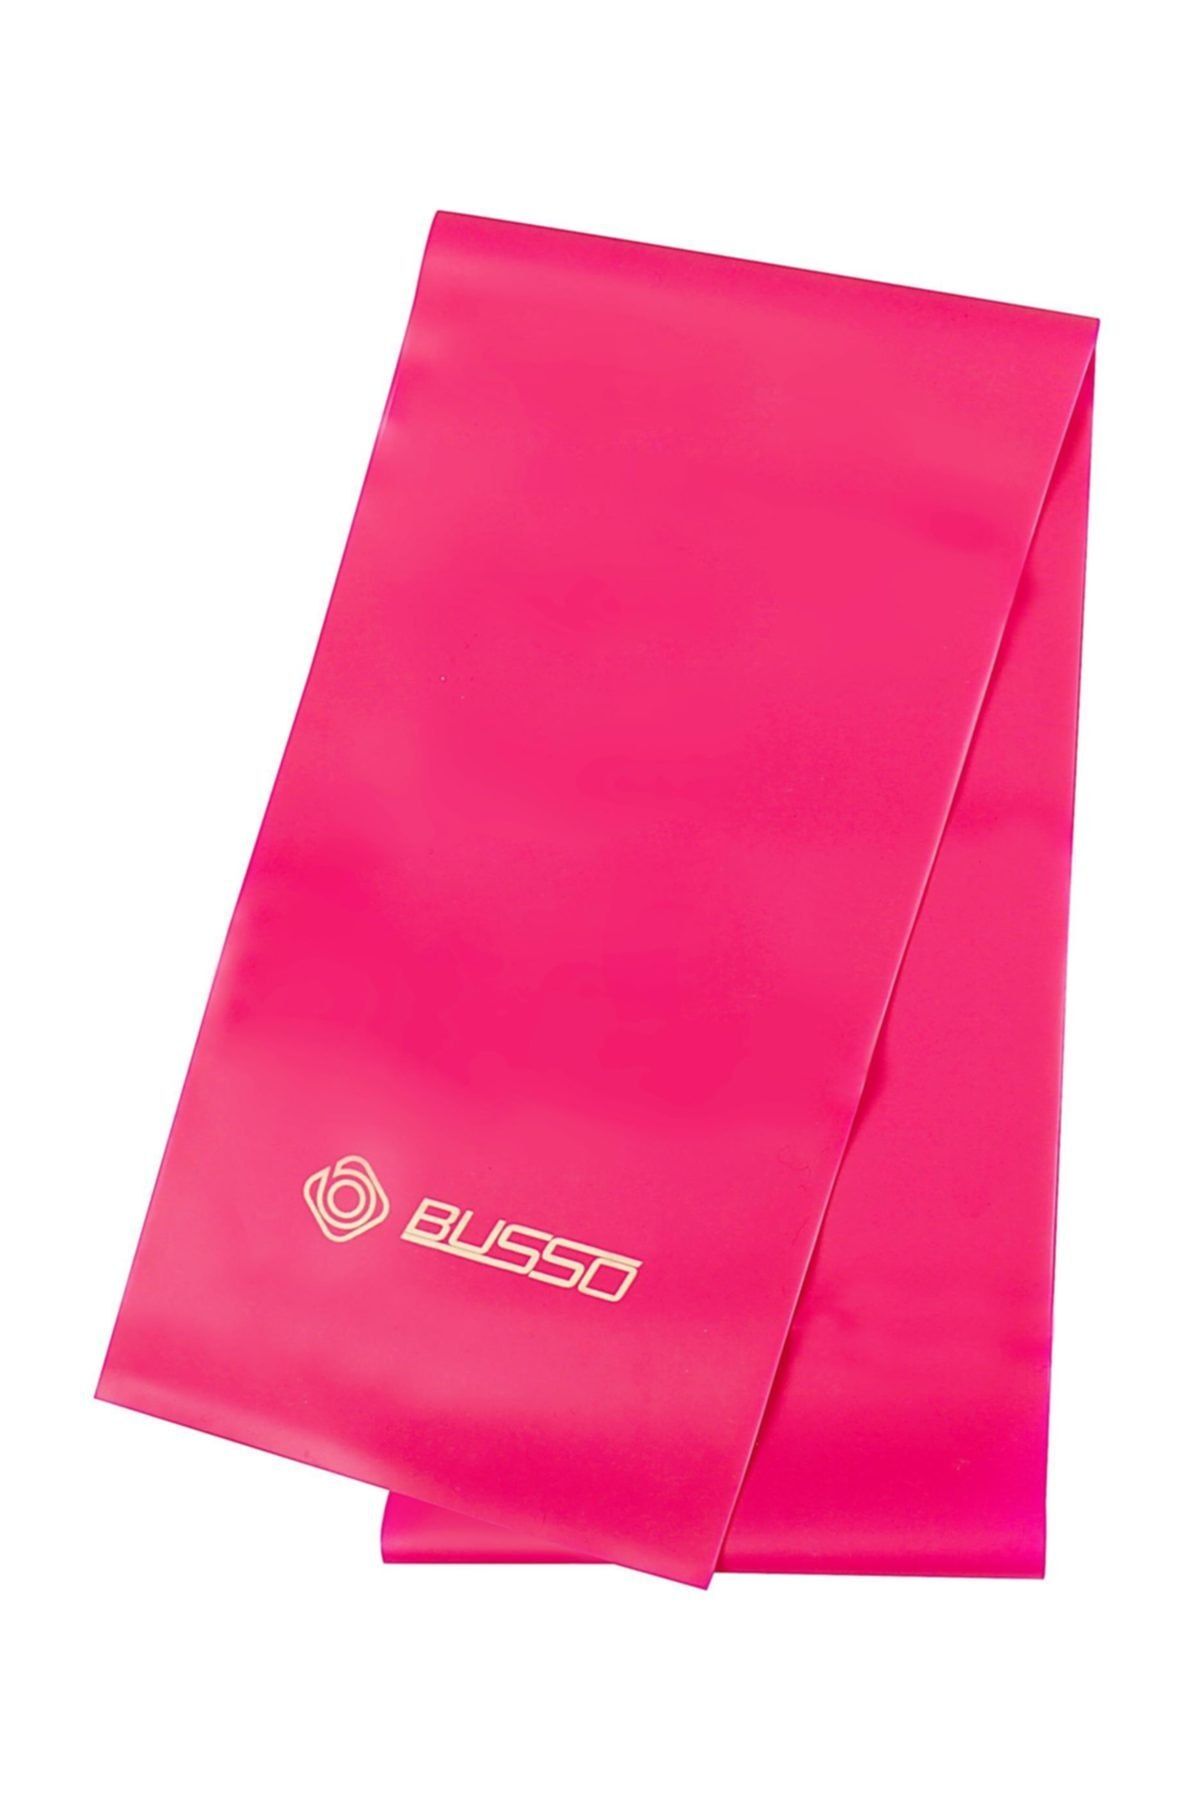 Busso BS-45 Pilates & Egzersiz Bandı Orta Direnç